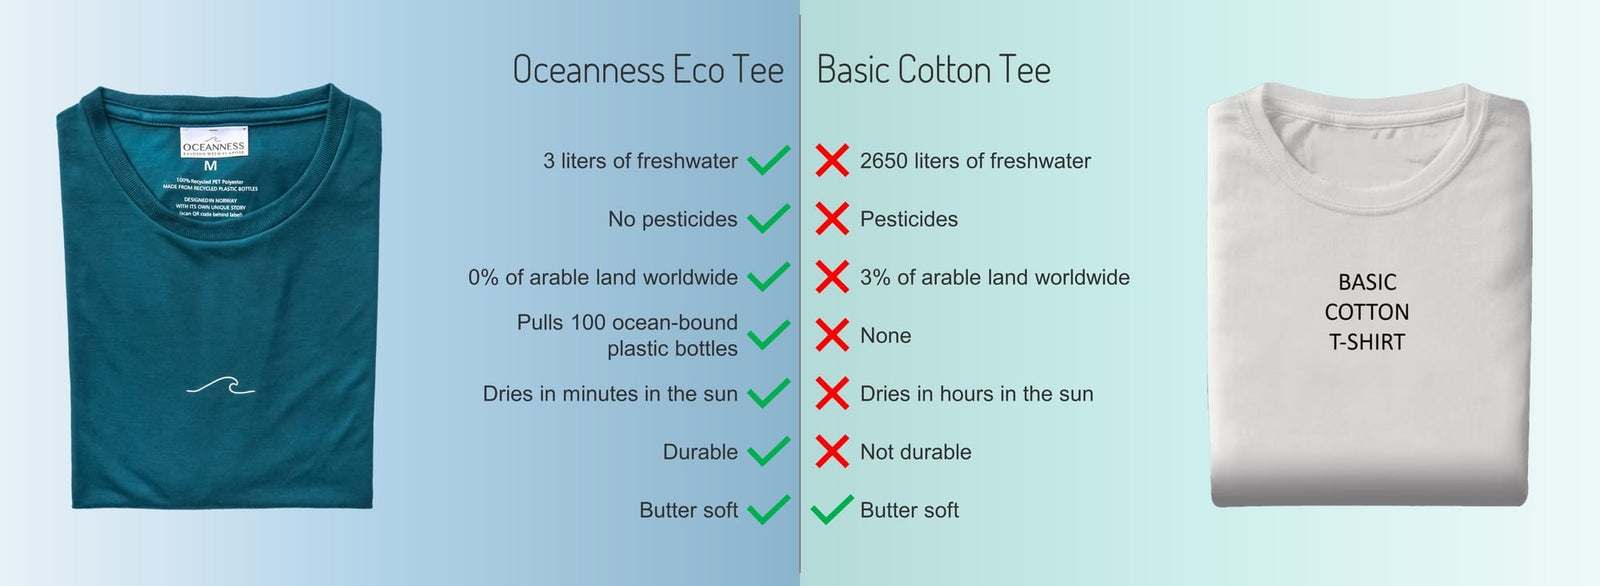 https://oceanness.com/cdn/shop/articles/oceanness-eco-t-shirt-versus-basic-cotton-t-shirt_1600x.jpg?v=1621197107